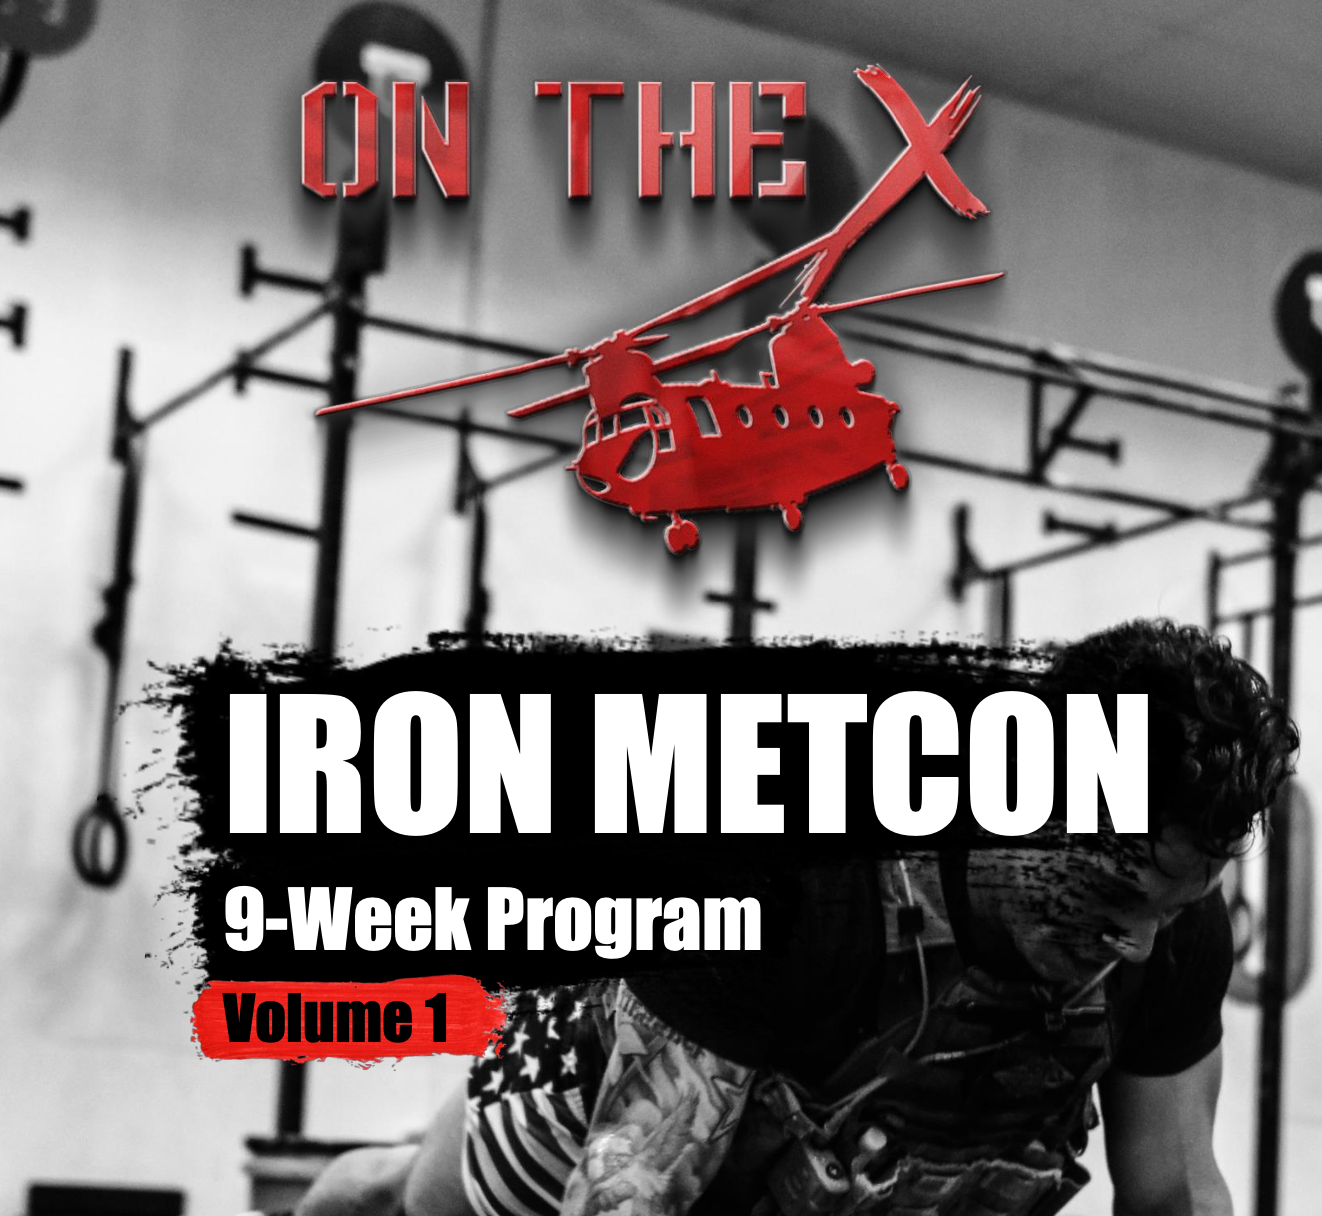 Iron Metcon